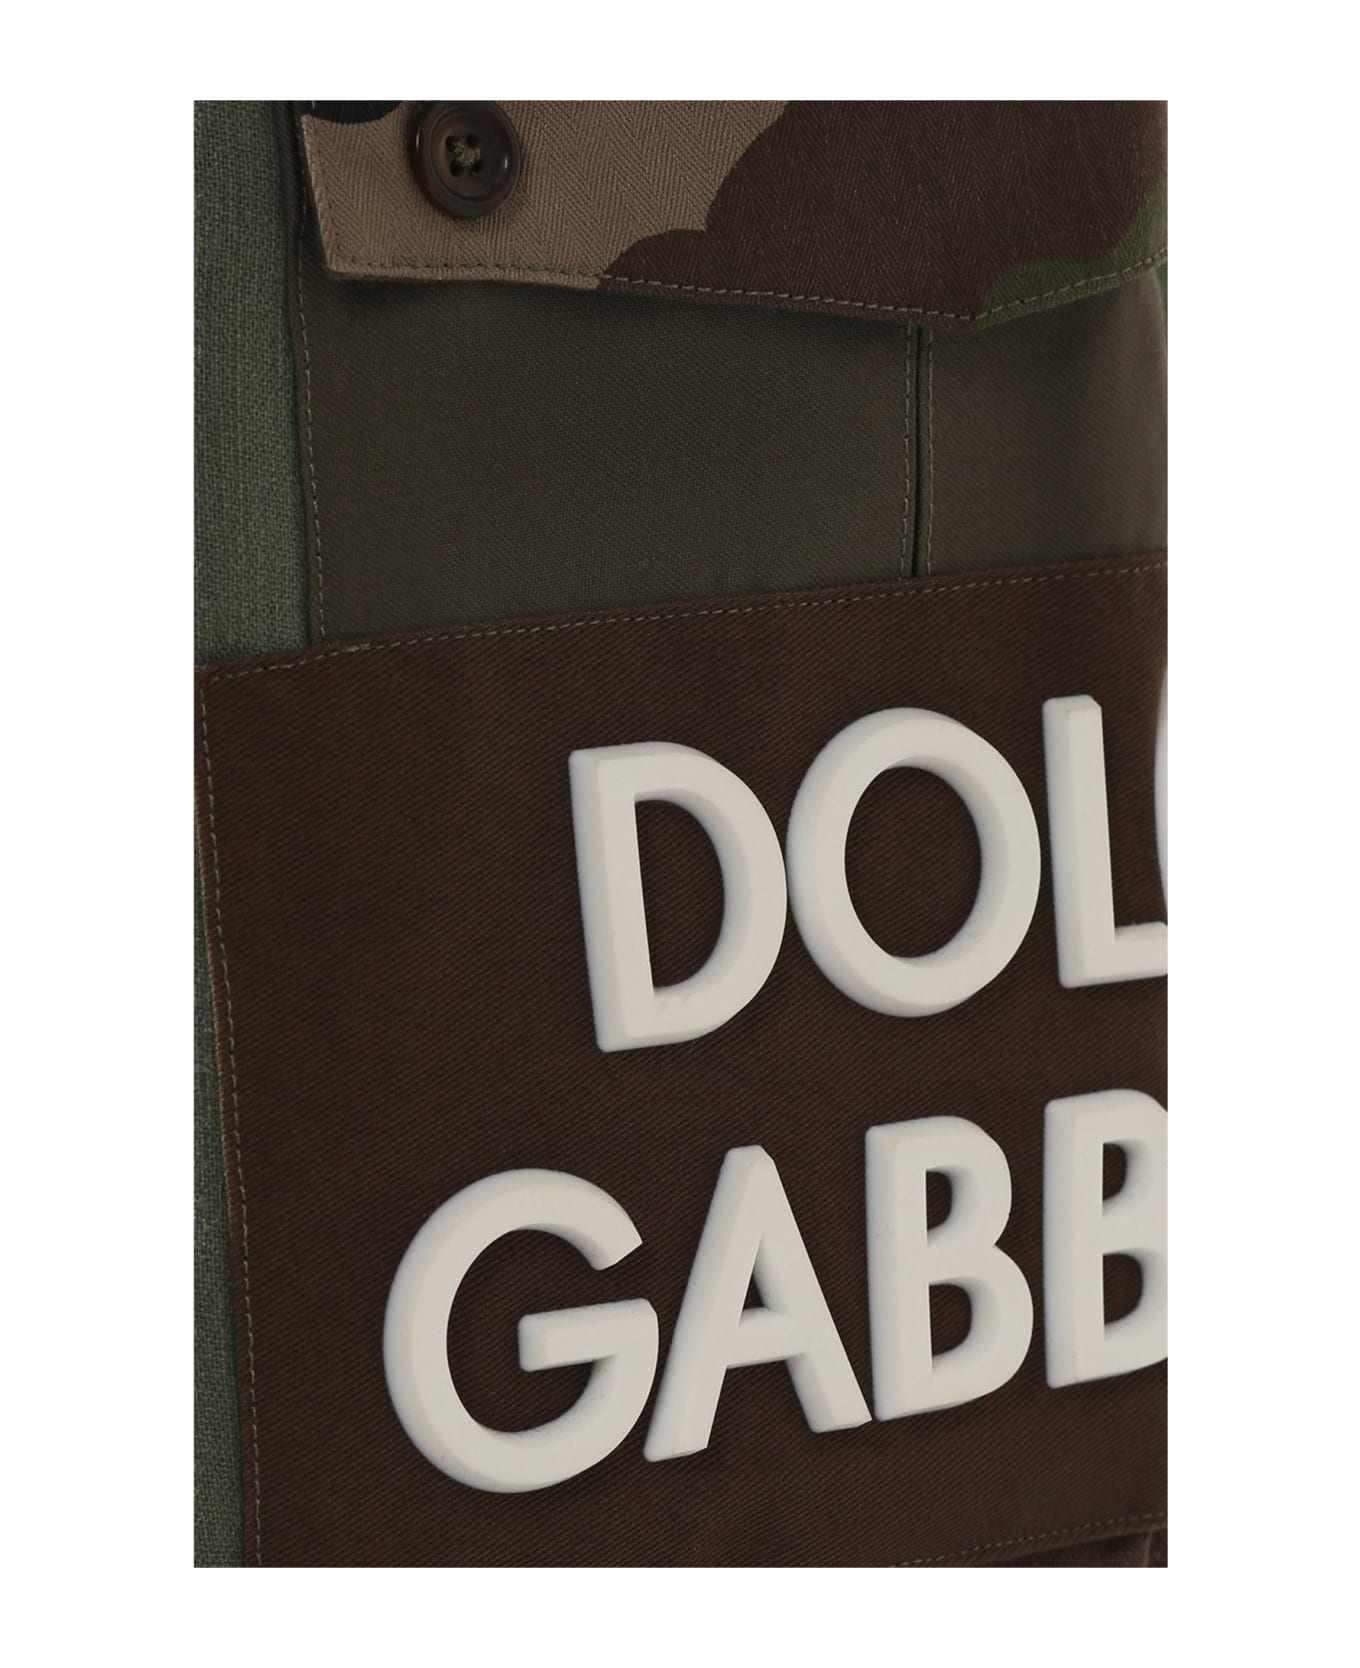 Dolce & Gabbana Cotton Shorts - Green